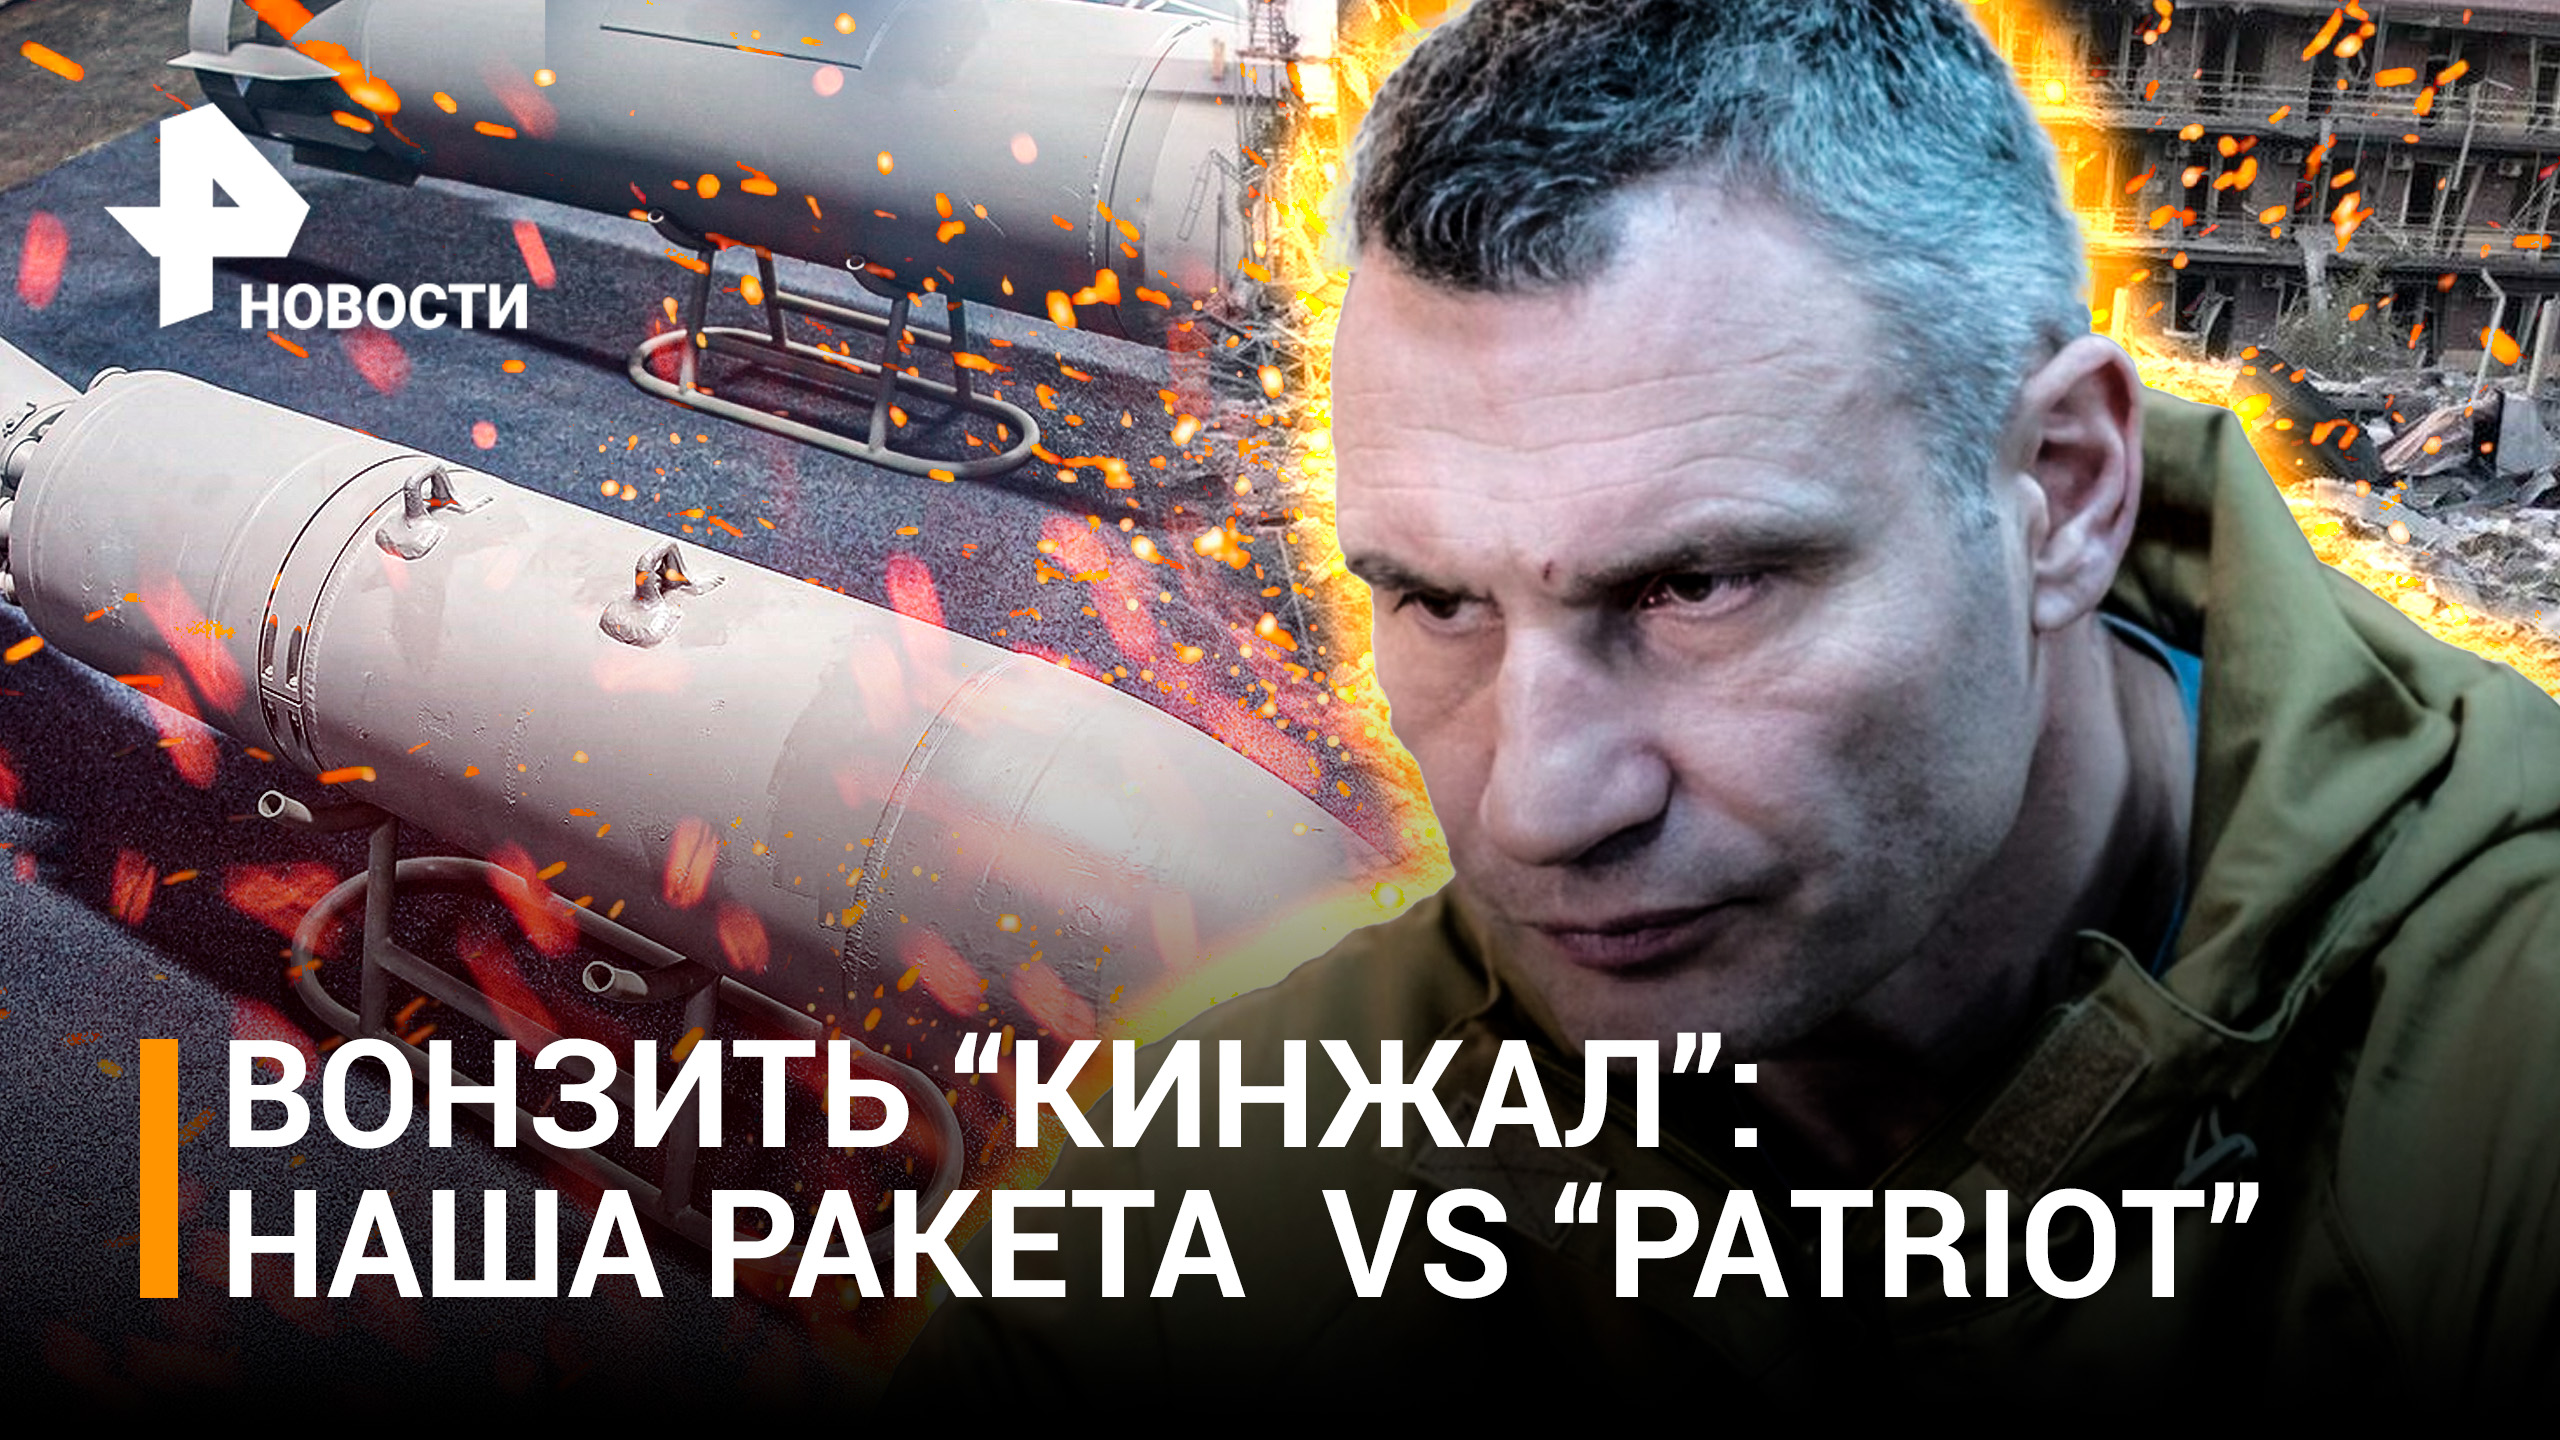 "Кинжал" vs ЗРК "Patriot": Кличко высмеяли за обломки сбитой авиабомбы. Что догонит "Кинжал"?